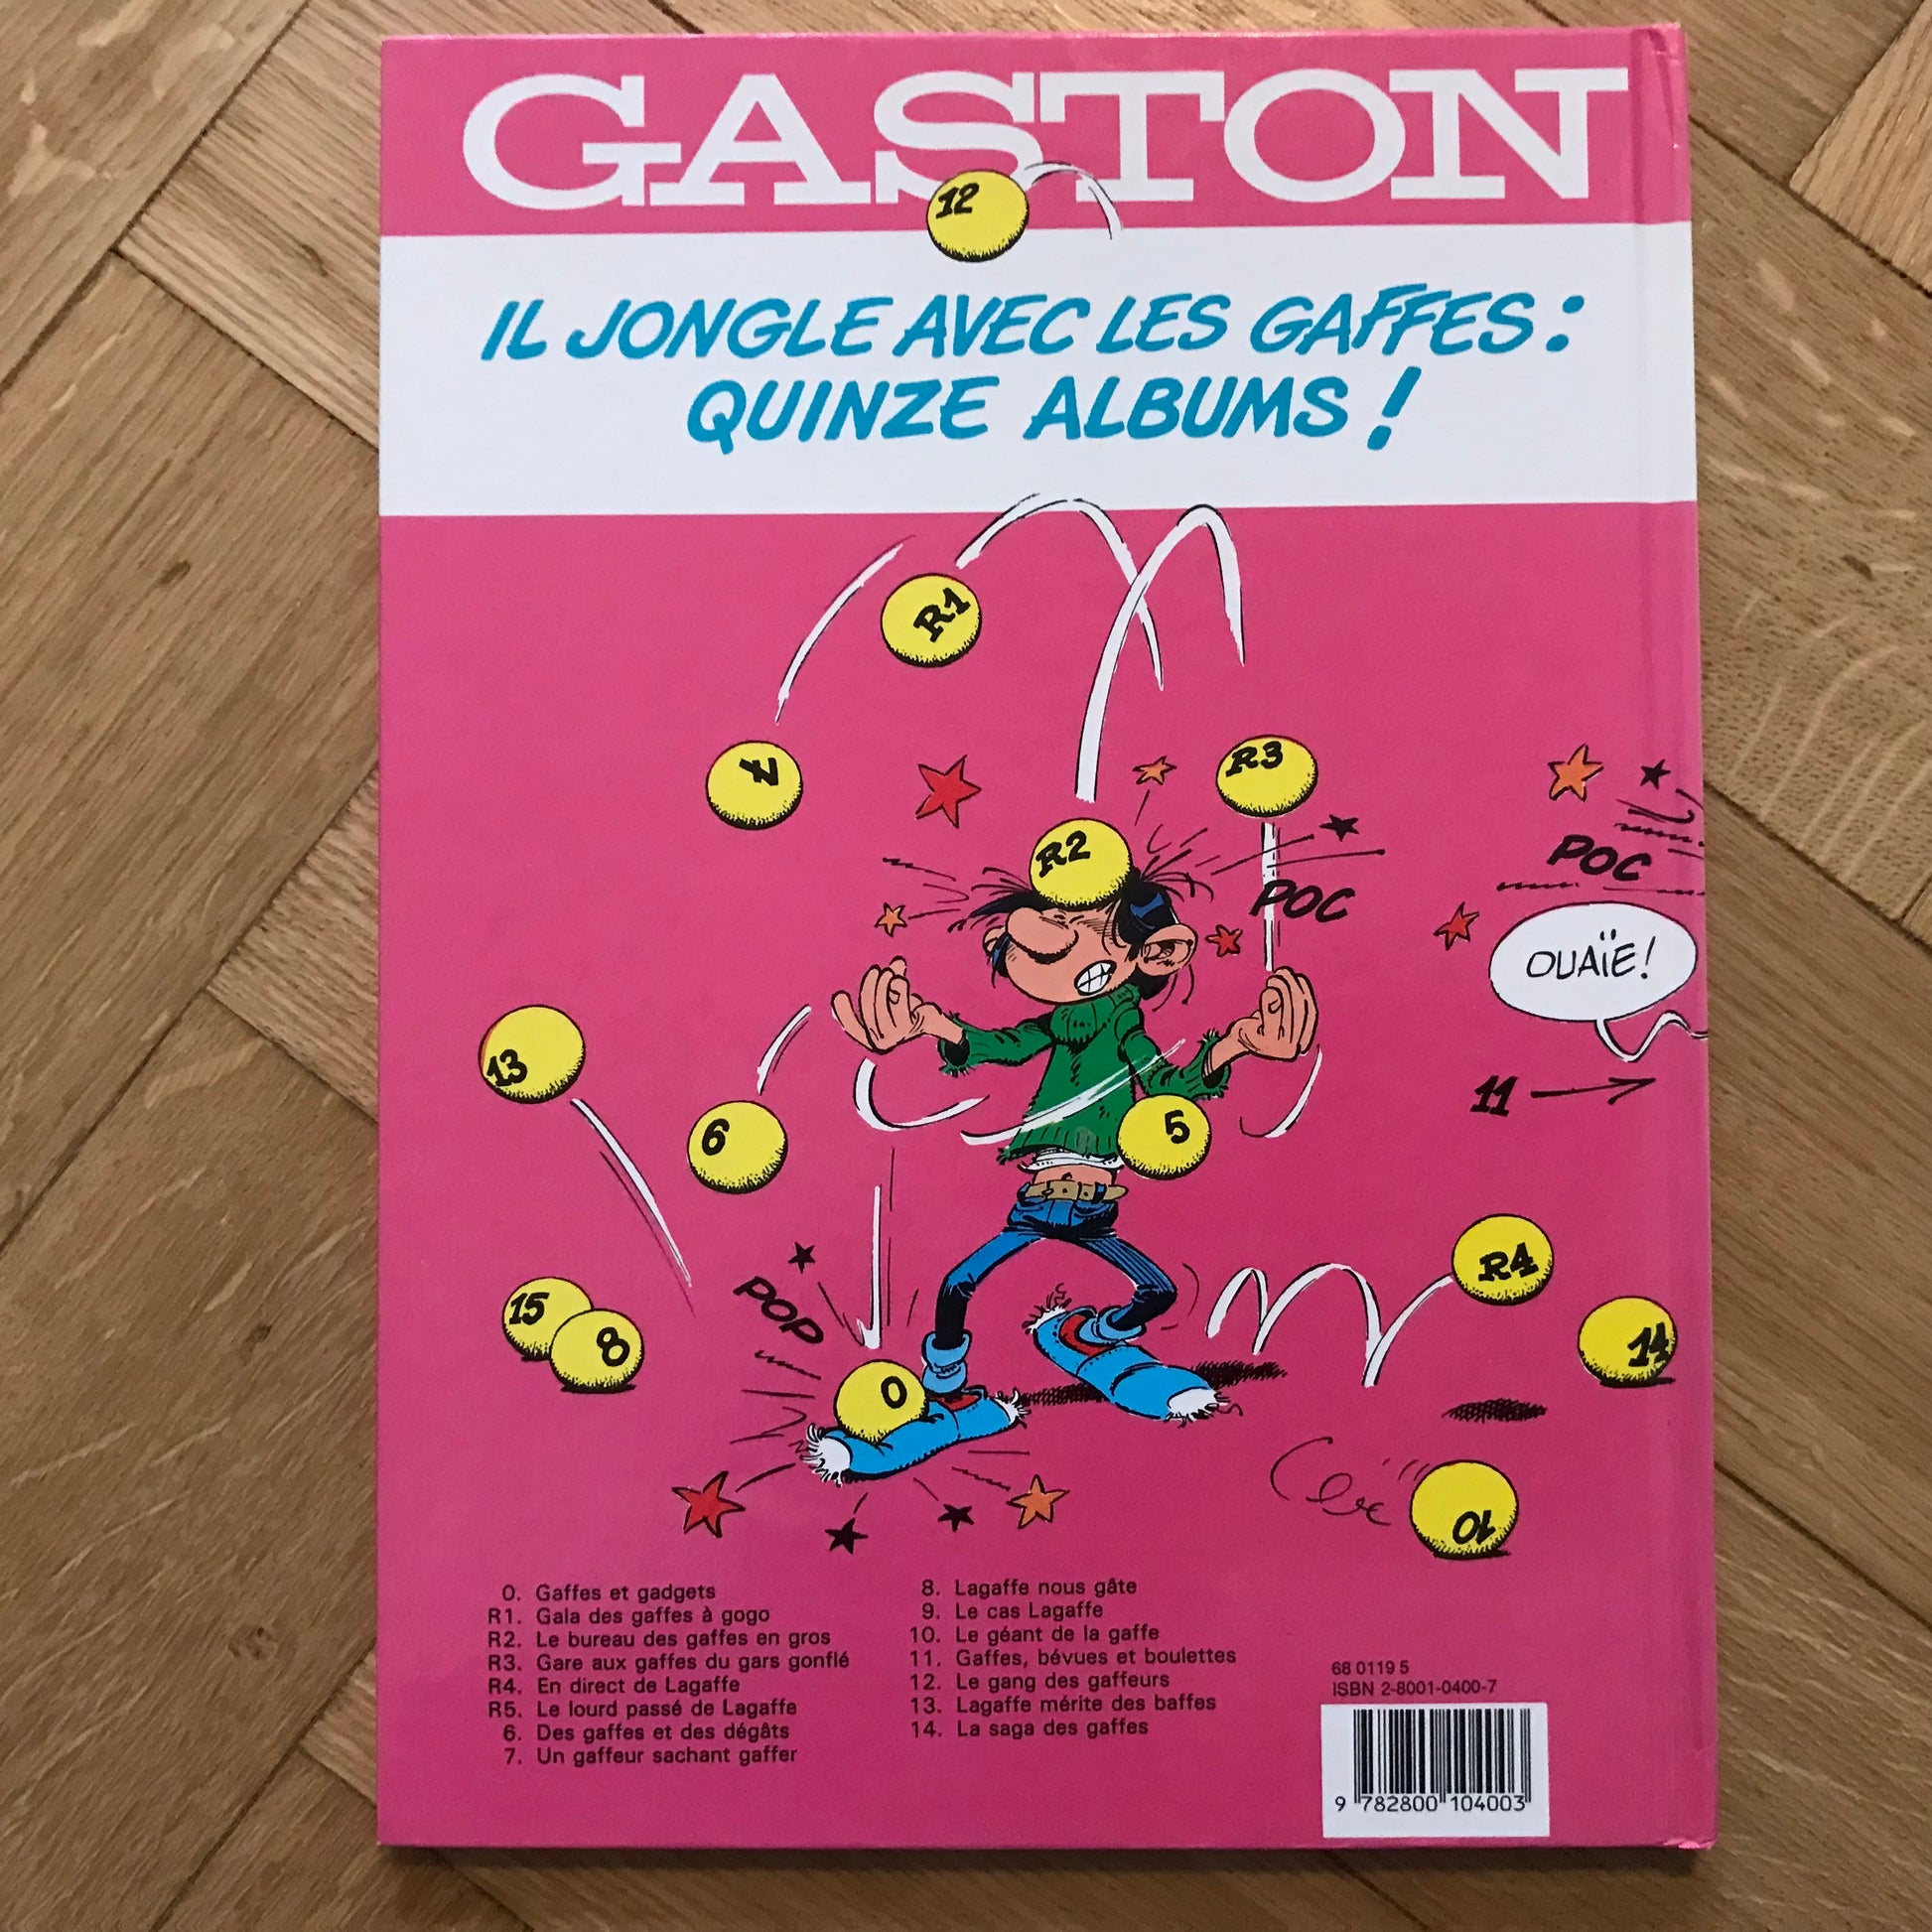 Un gaffeur sachant gaffer, tome 9 de la série de BD Gaston